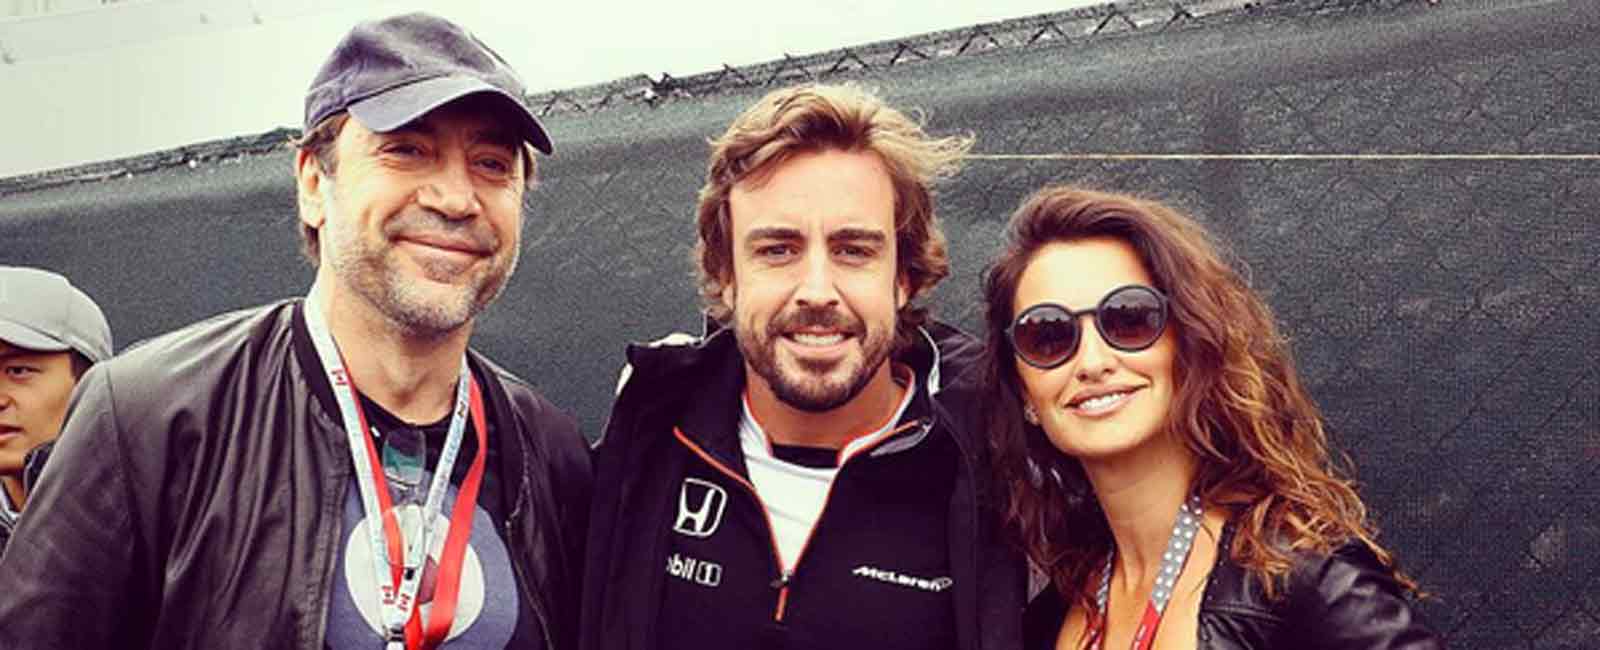 Fernando Alonso, visita sorpresa de Javier Bardem y Penélope Cruz en Montreal